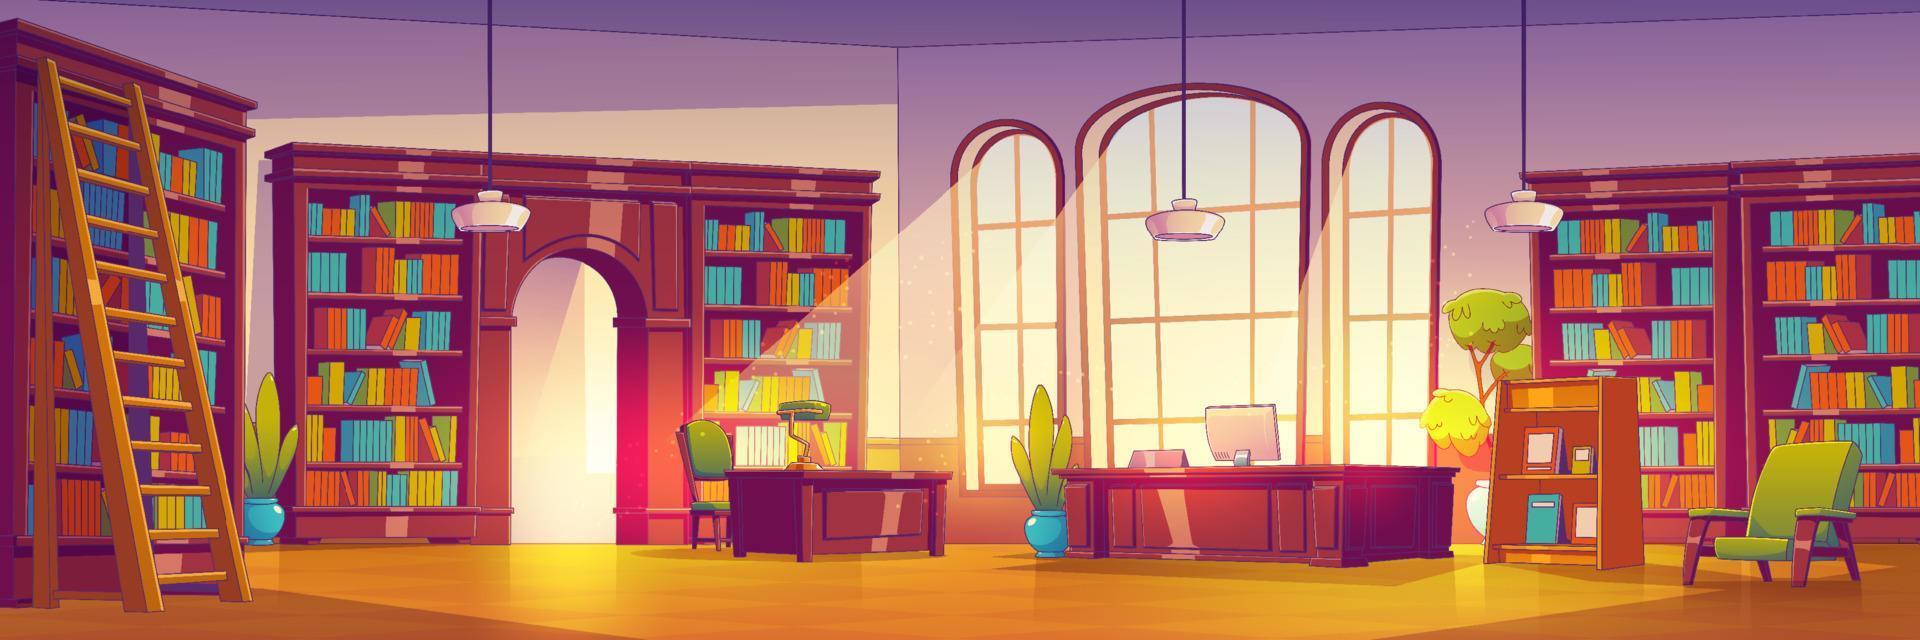 dibujos animados biblioteca interior con muchos libros vector